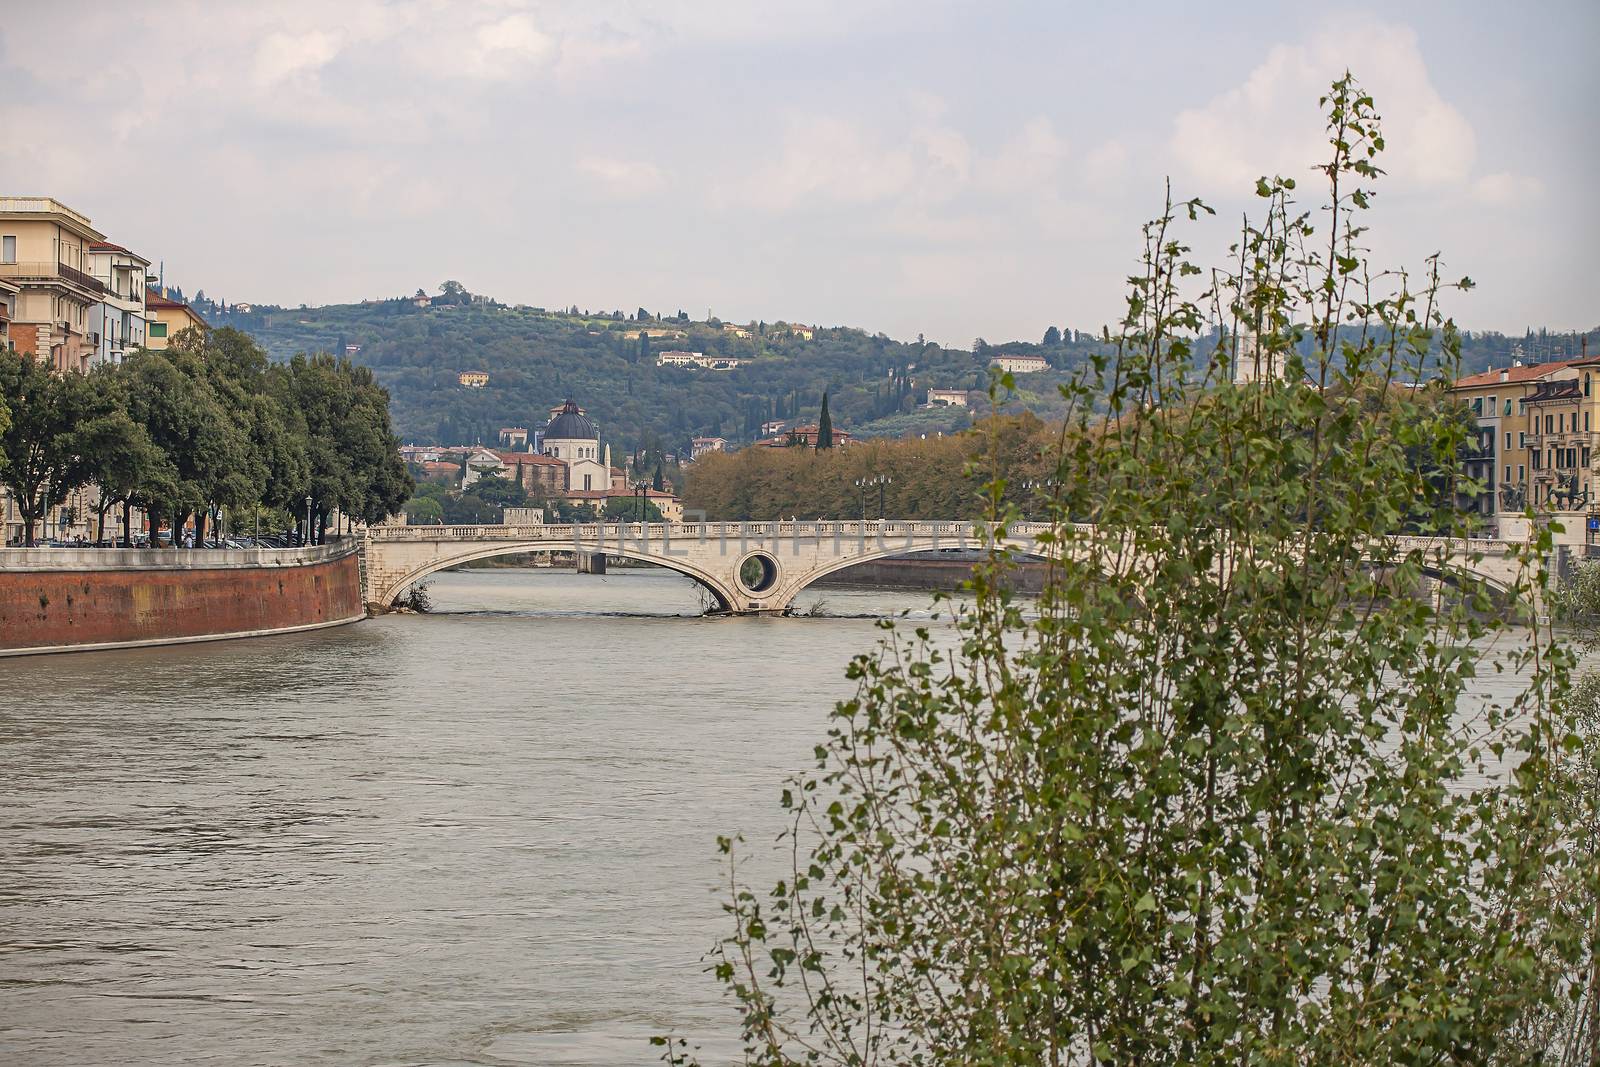 Adige river in Verona in Italy by pippocarlot